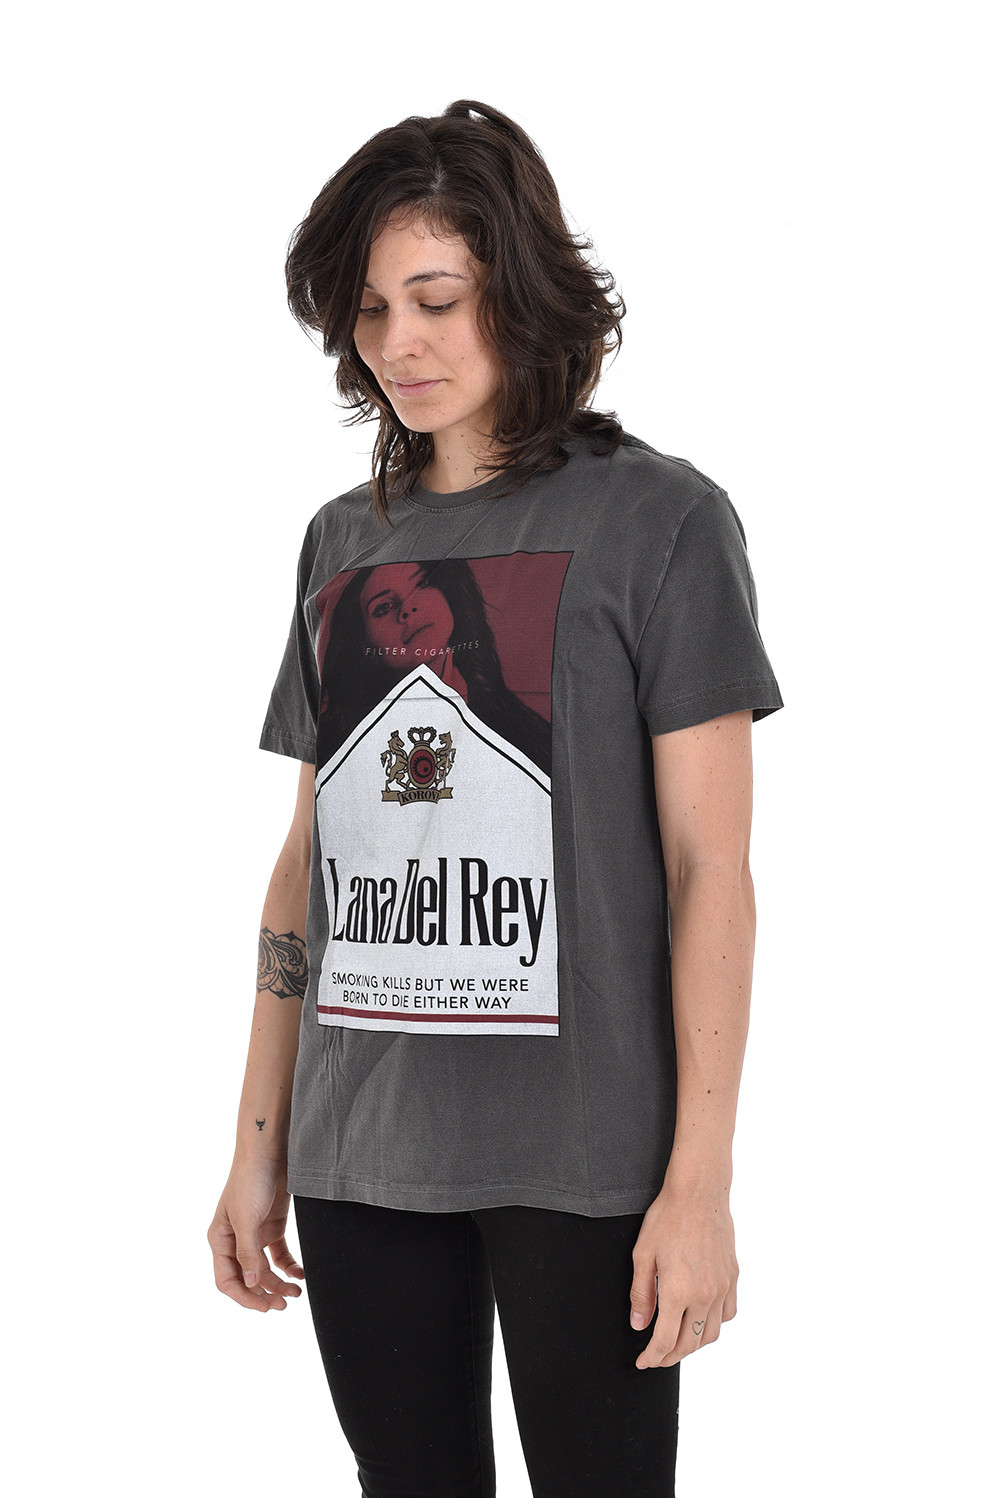 Camiseta Korova Lana Del Rey